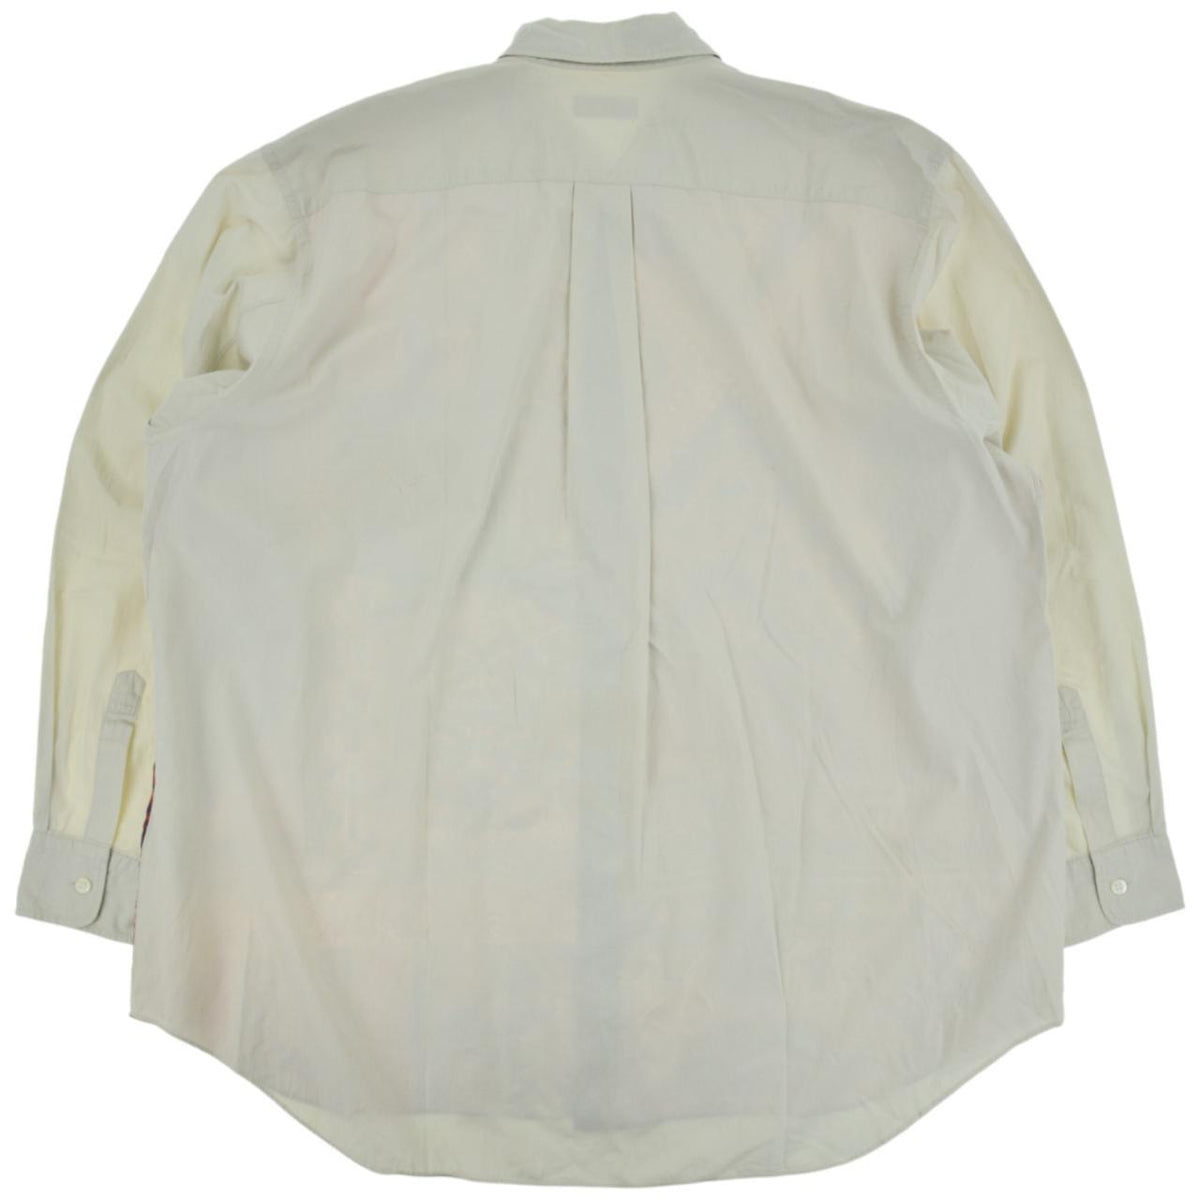 Vintage Comme Des Garcons Paisley HOMME PLUS Shirt Size M